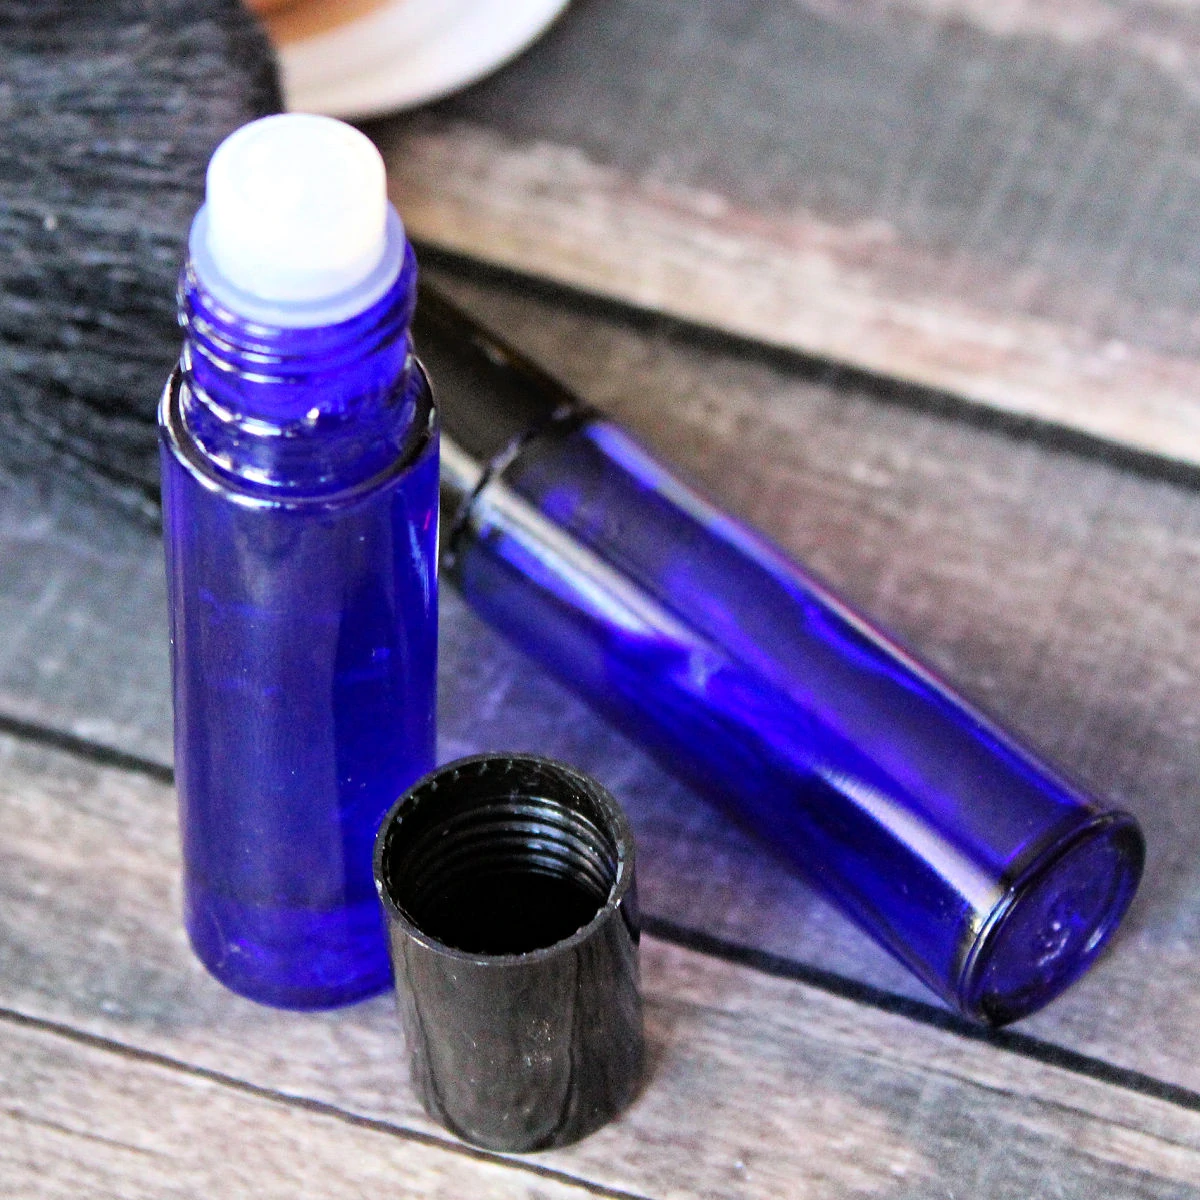 2 blue roller bottles of homemade lip gloss